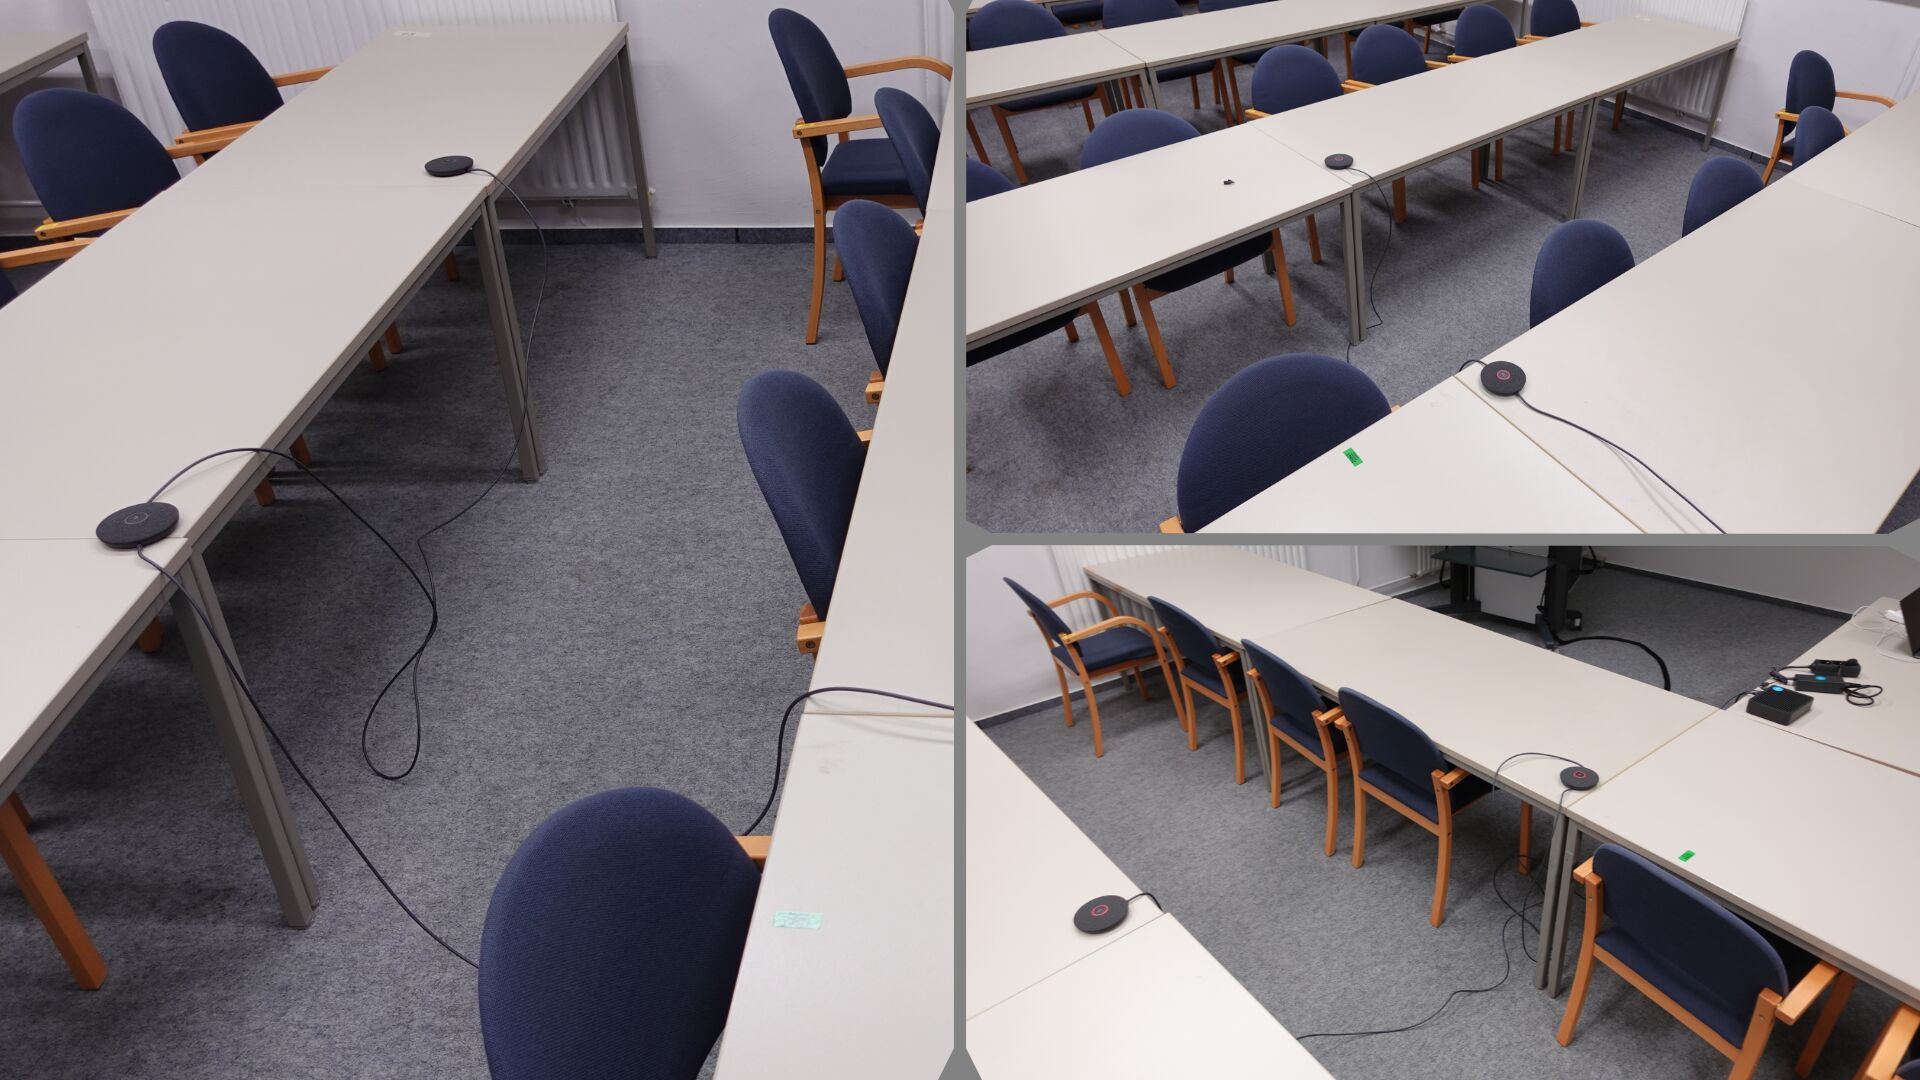 Bilderstrecke, die zeigt, wie zwei Mikrofone über eine erste Tischreihe hinweg auf den Tischen einer zweiten Tischreihe verteilt werden können.